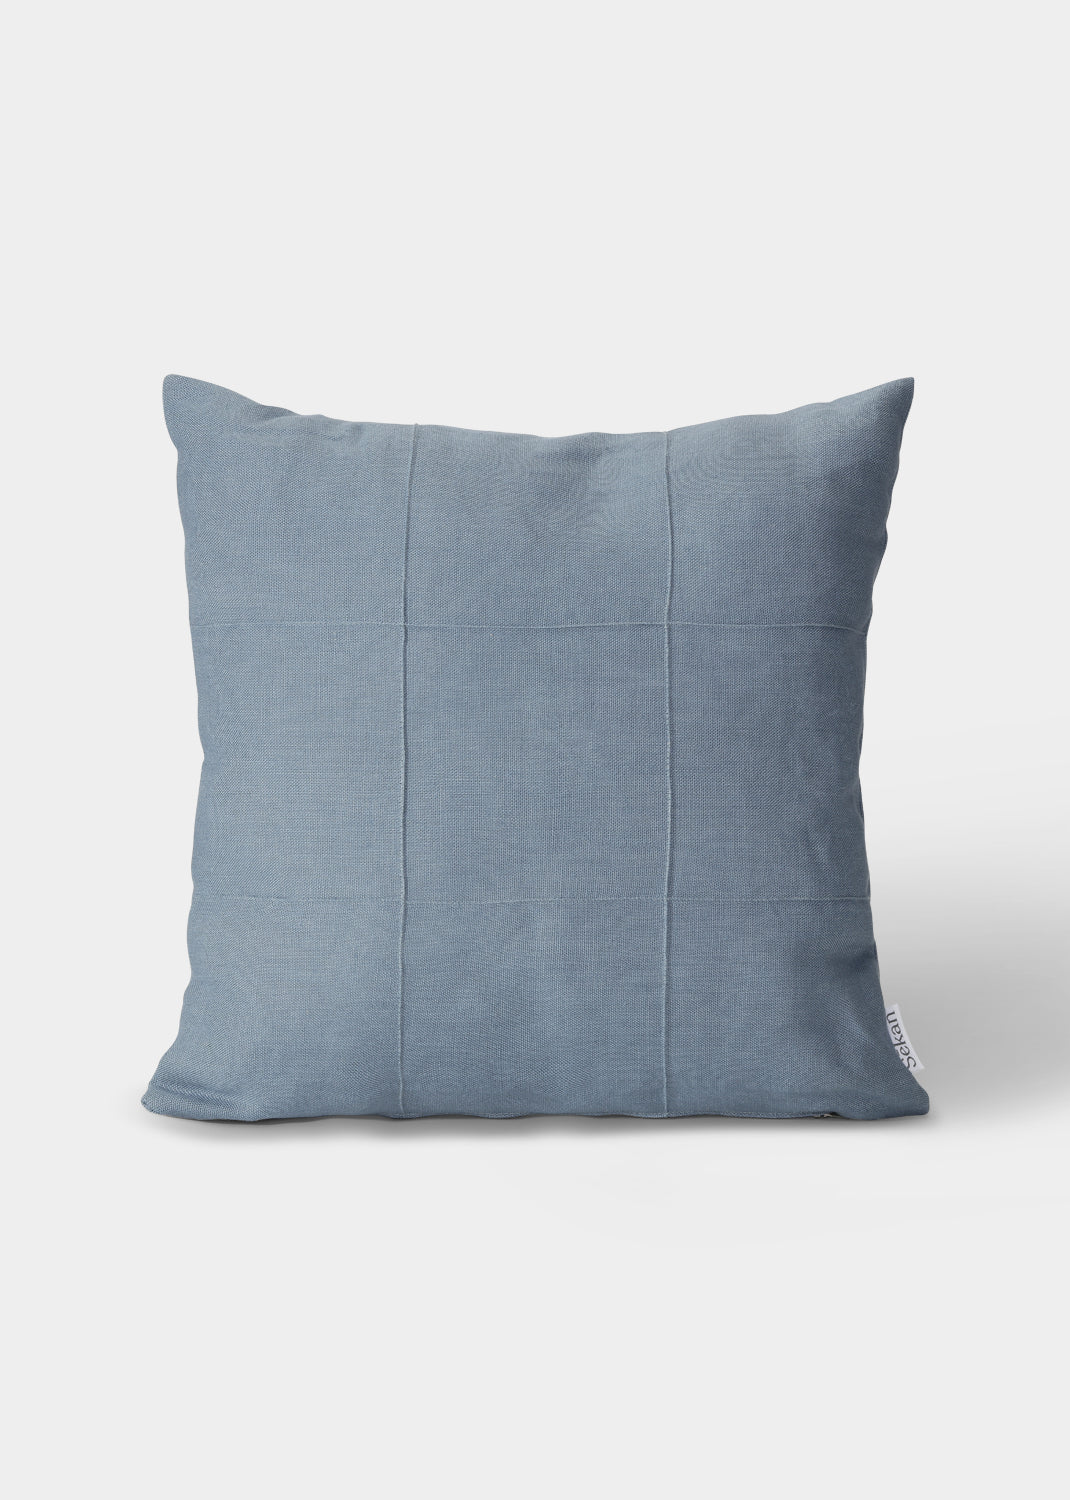 Flax pillow - Sky blue 